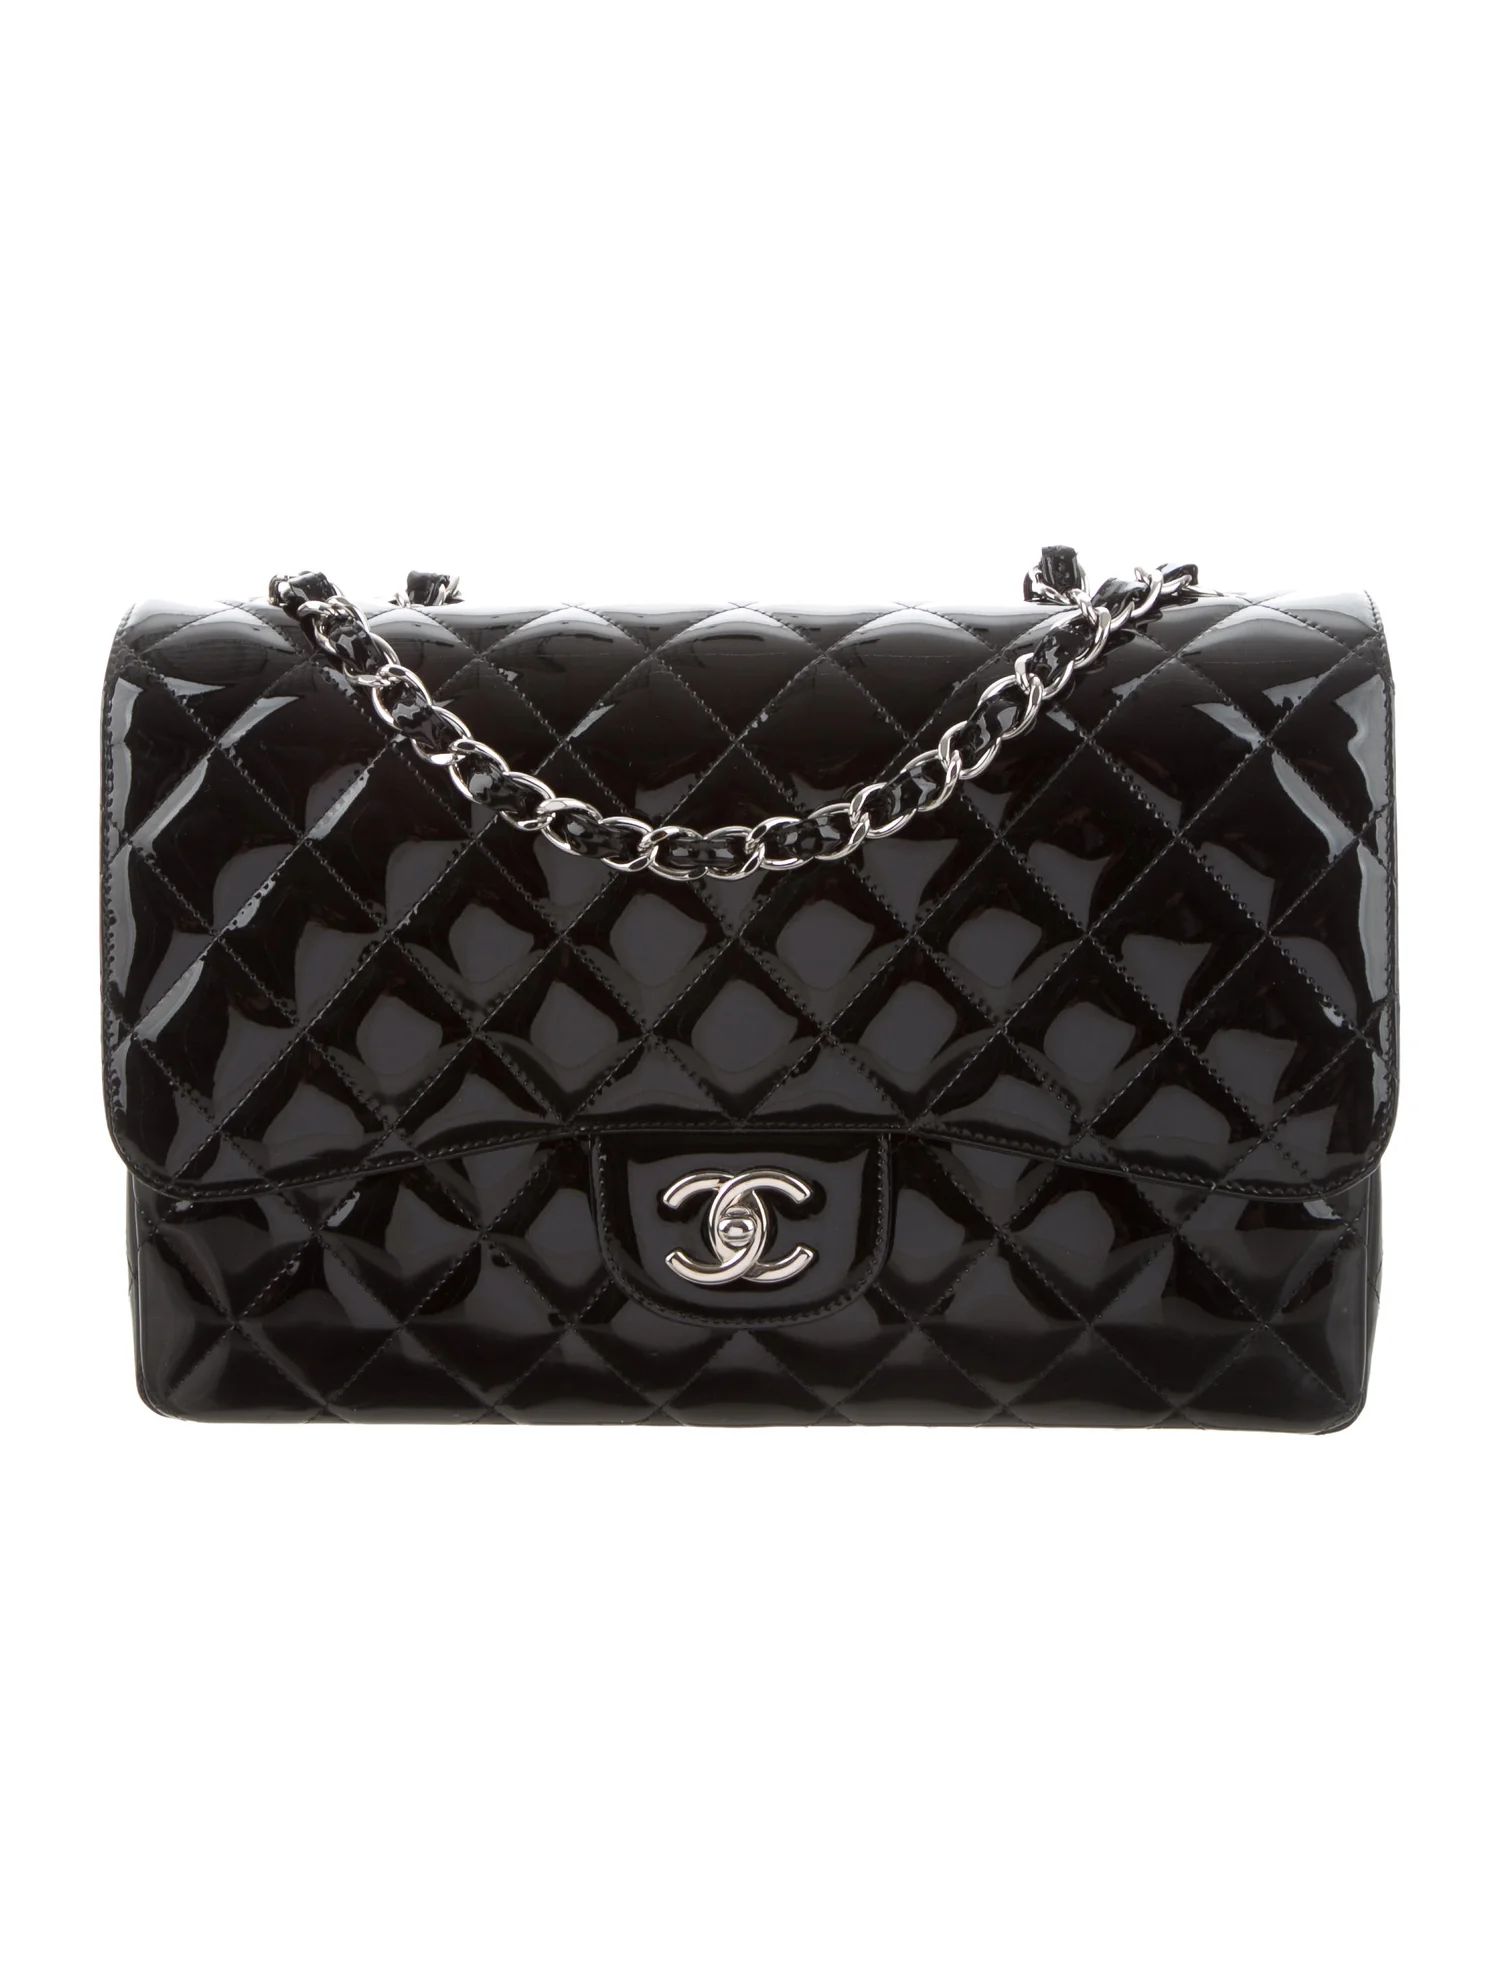 Chanel Classic Jumbo Single Flap Bag - Handbags -
          CHA372327 | The RealReal | The RealReal